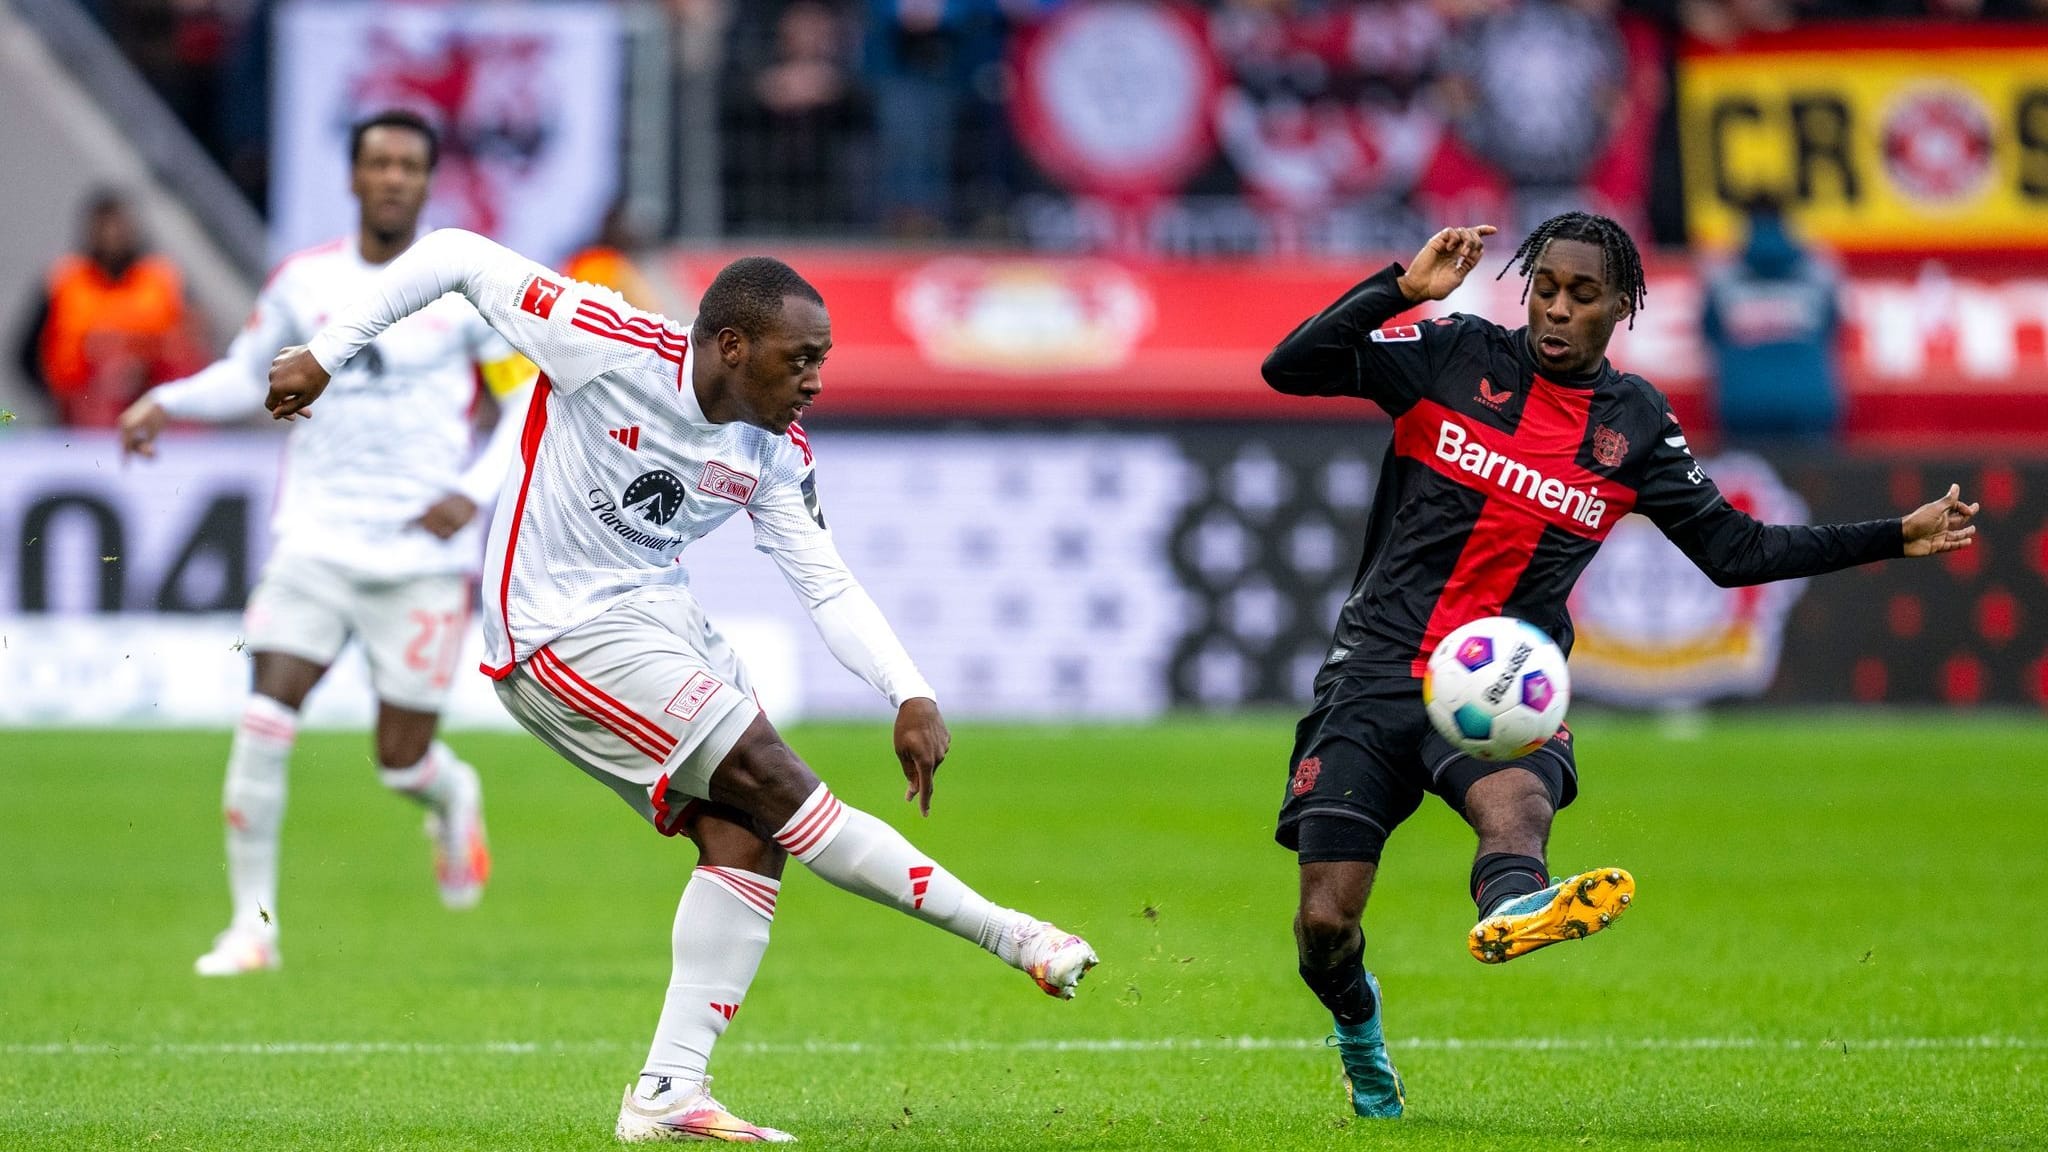 Länderspiele | Leverkusens Frimpong fehlt Niederlande wegen Hüftproblemen